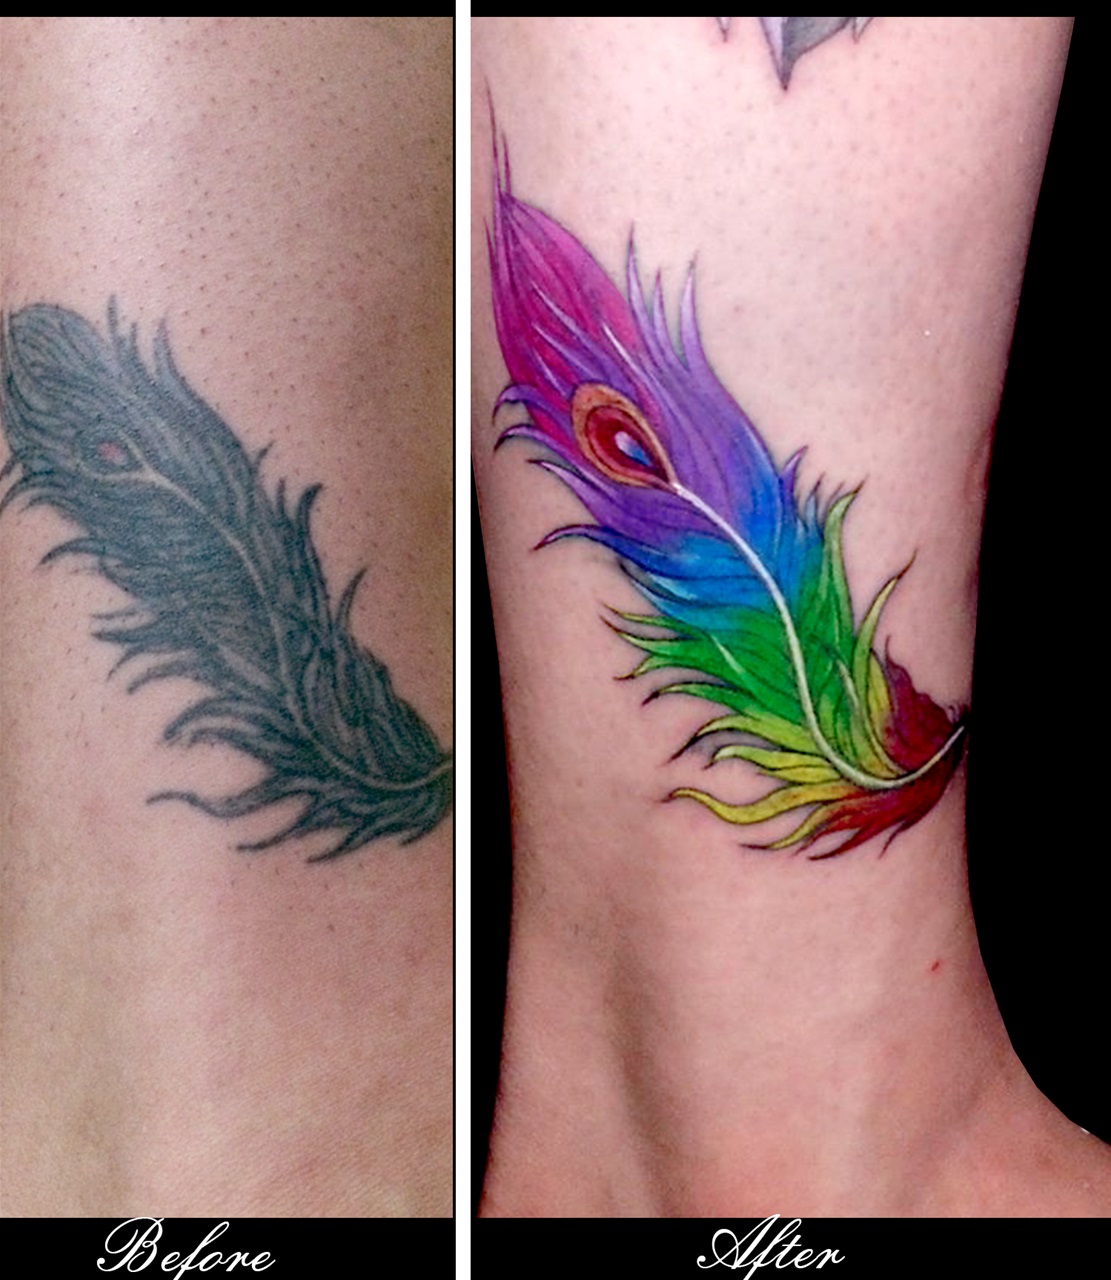 Sửa đè hình xăm bị hỏng  Orion tattoo Tattoos Watercolor tattoo